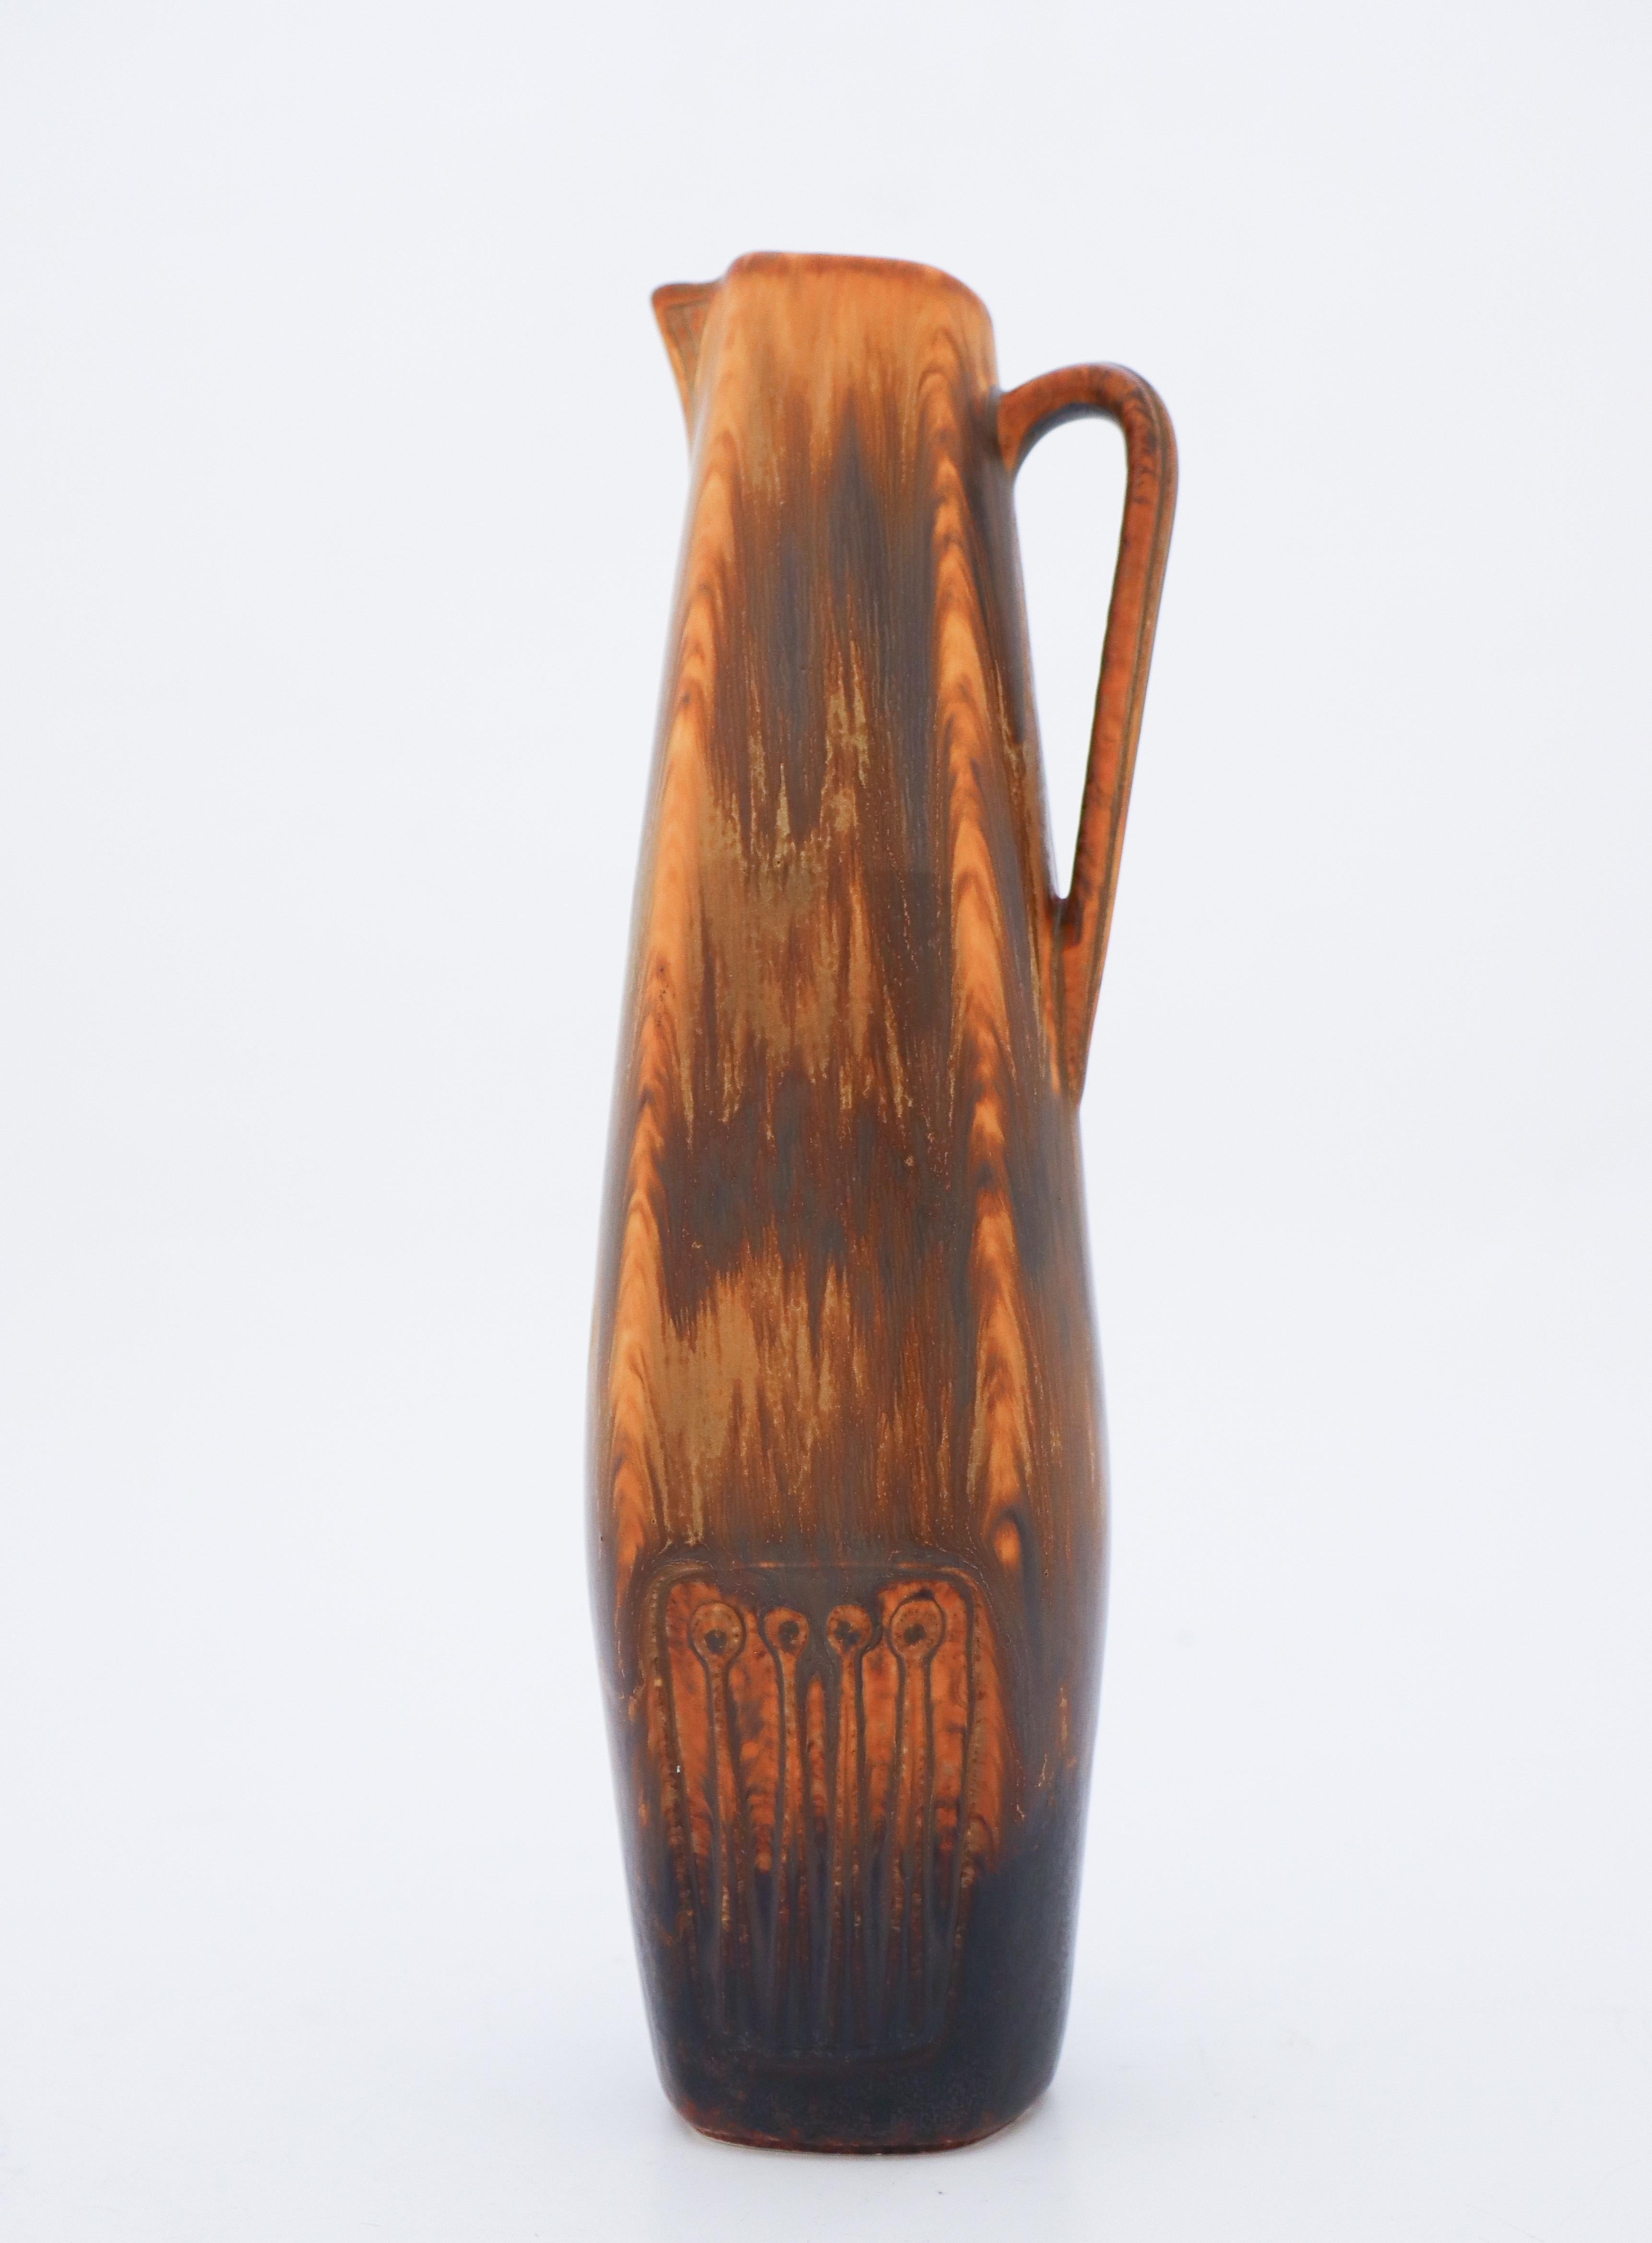 Un vase brun conçu par Gunnar Nylund chez Rörstrand, il mesure 26,5 cm (10,6) de haut. Il est proche de l'état neuf et marqué comme étant de qualité 1:st. 

Gunnar Nylund est né à Paris en 1904 de parents qui travaillaient comme sculpteurs et